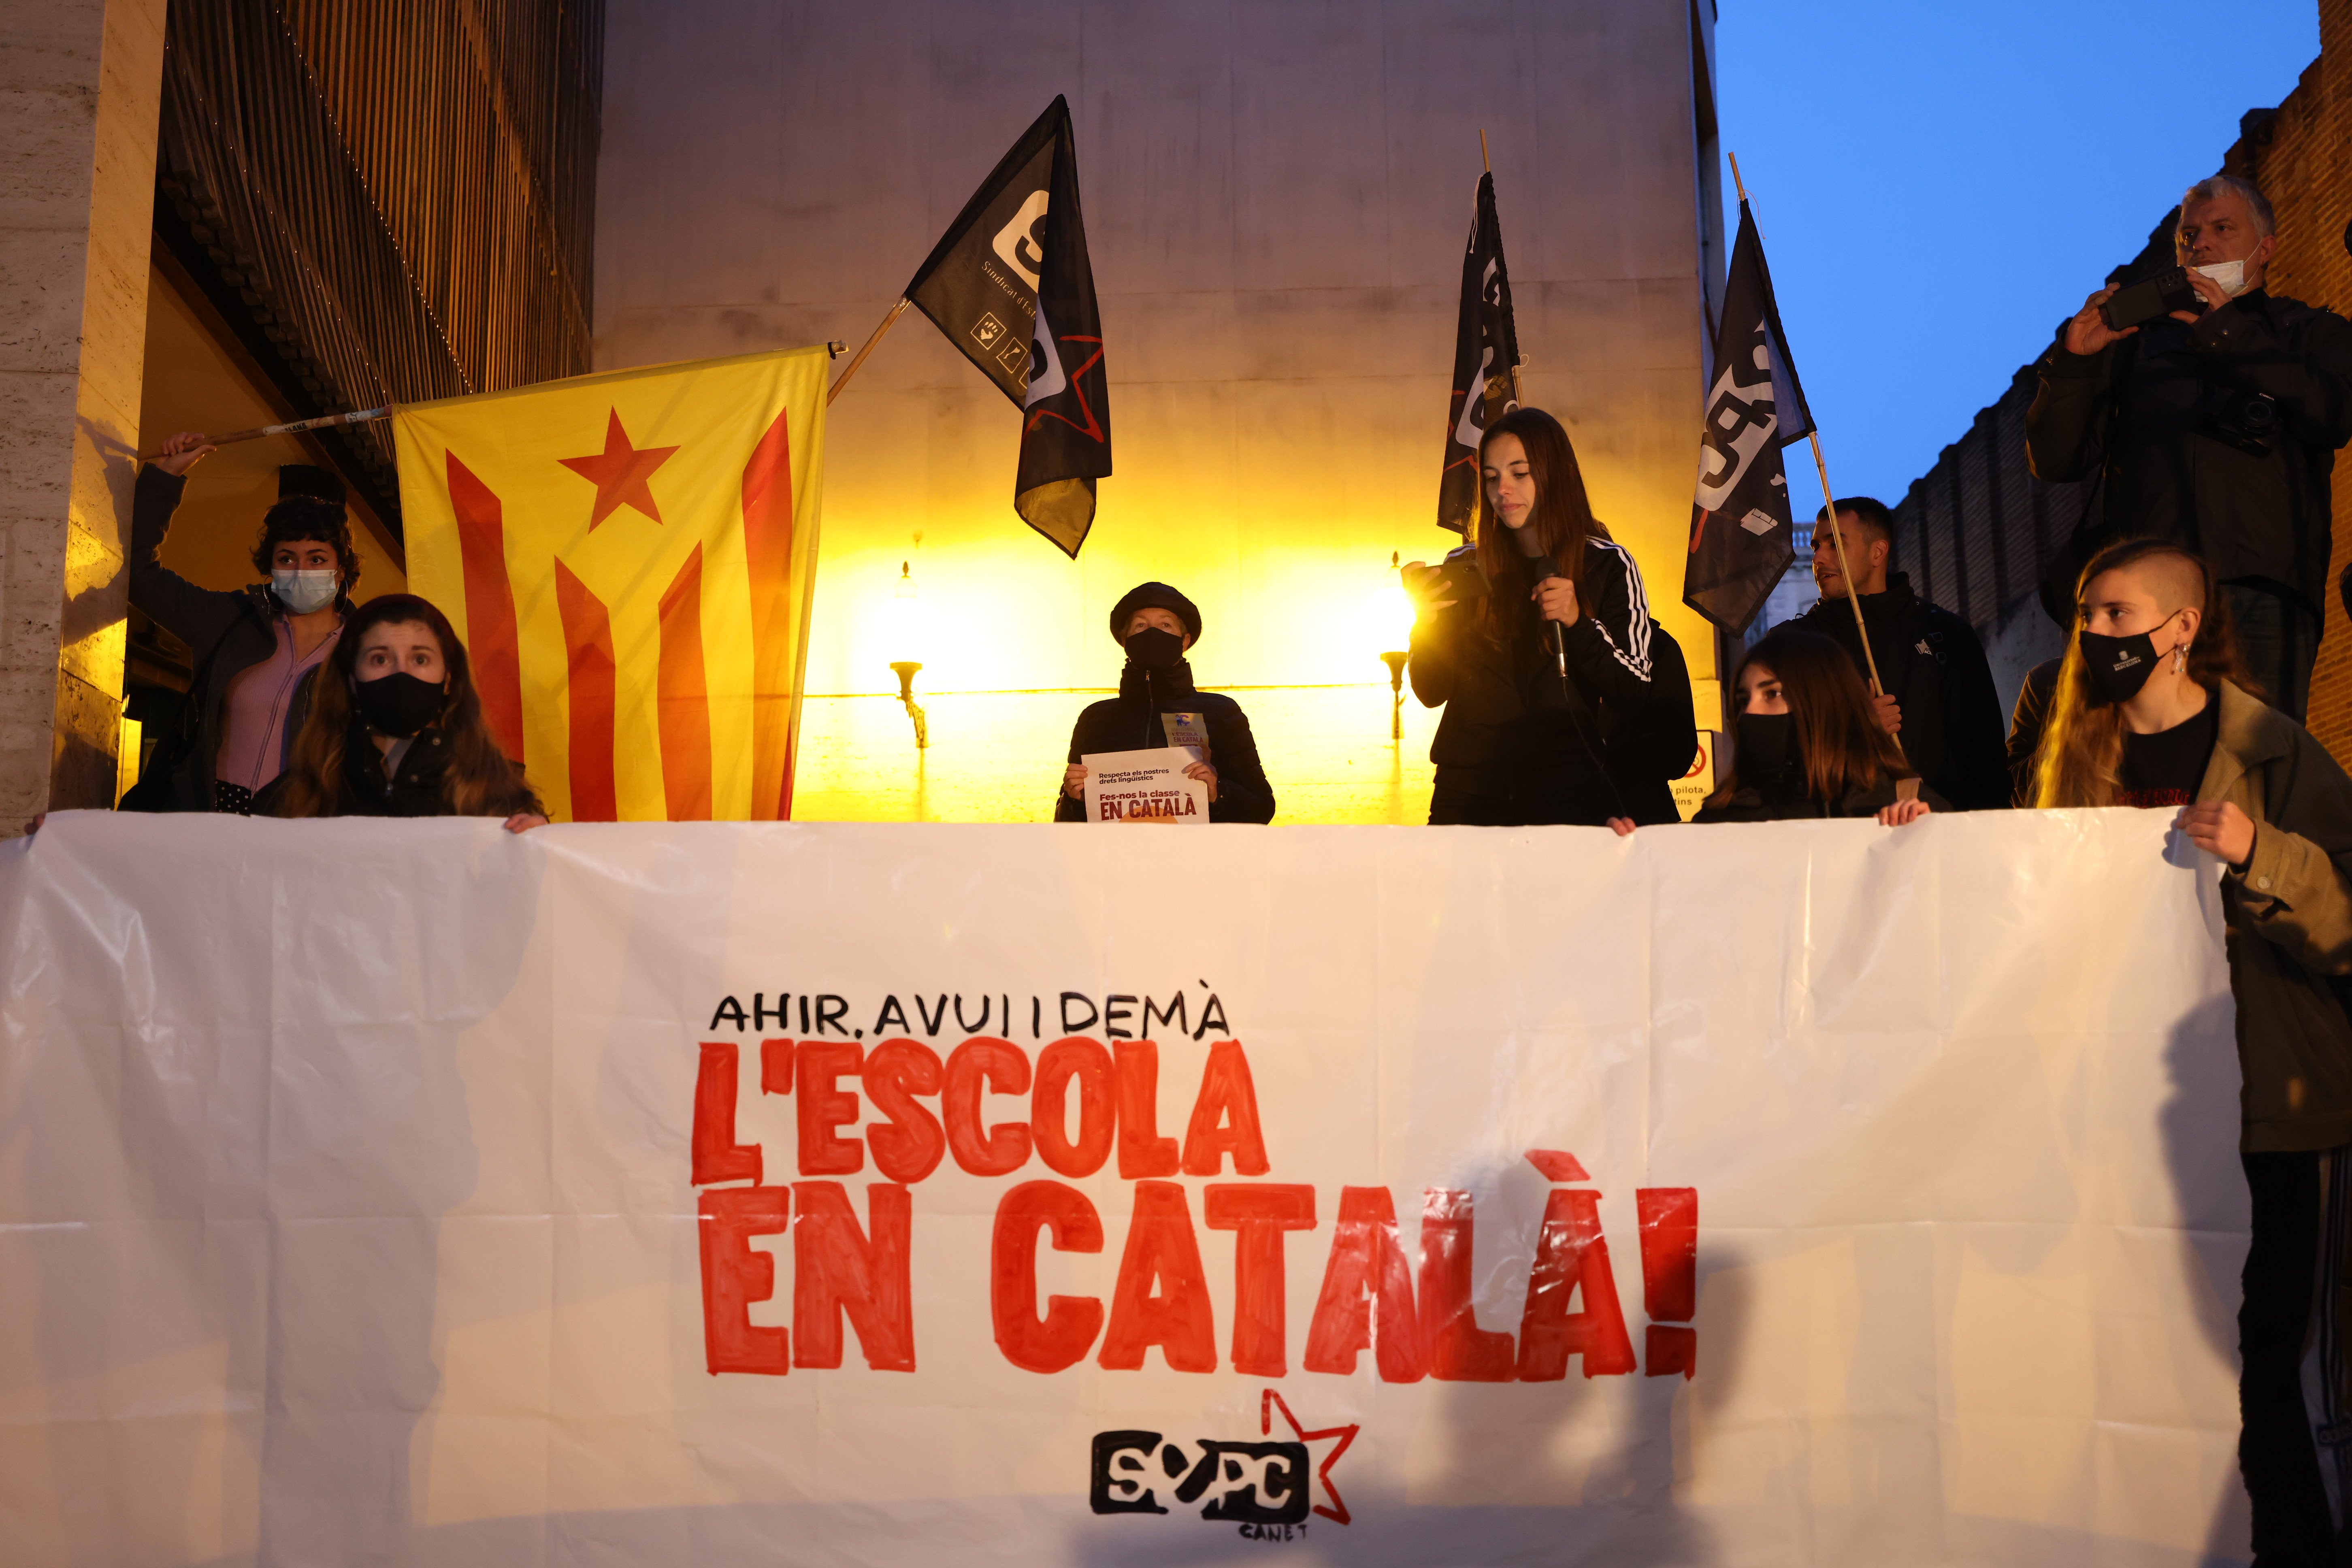 ¿Crees que el castellano es un idioma privilegiado en Catalunya?